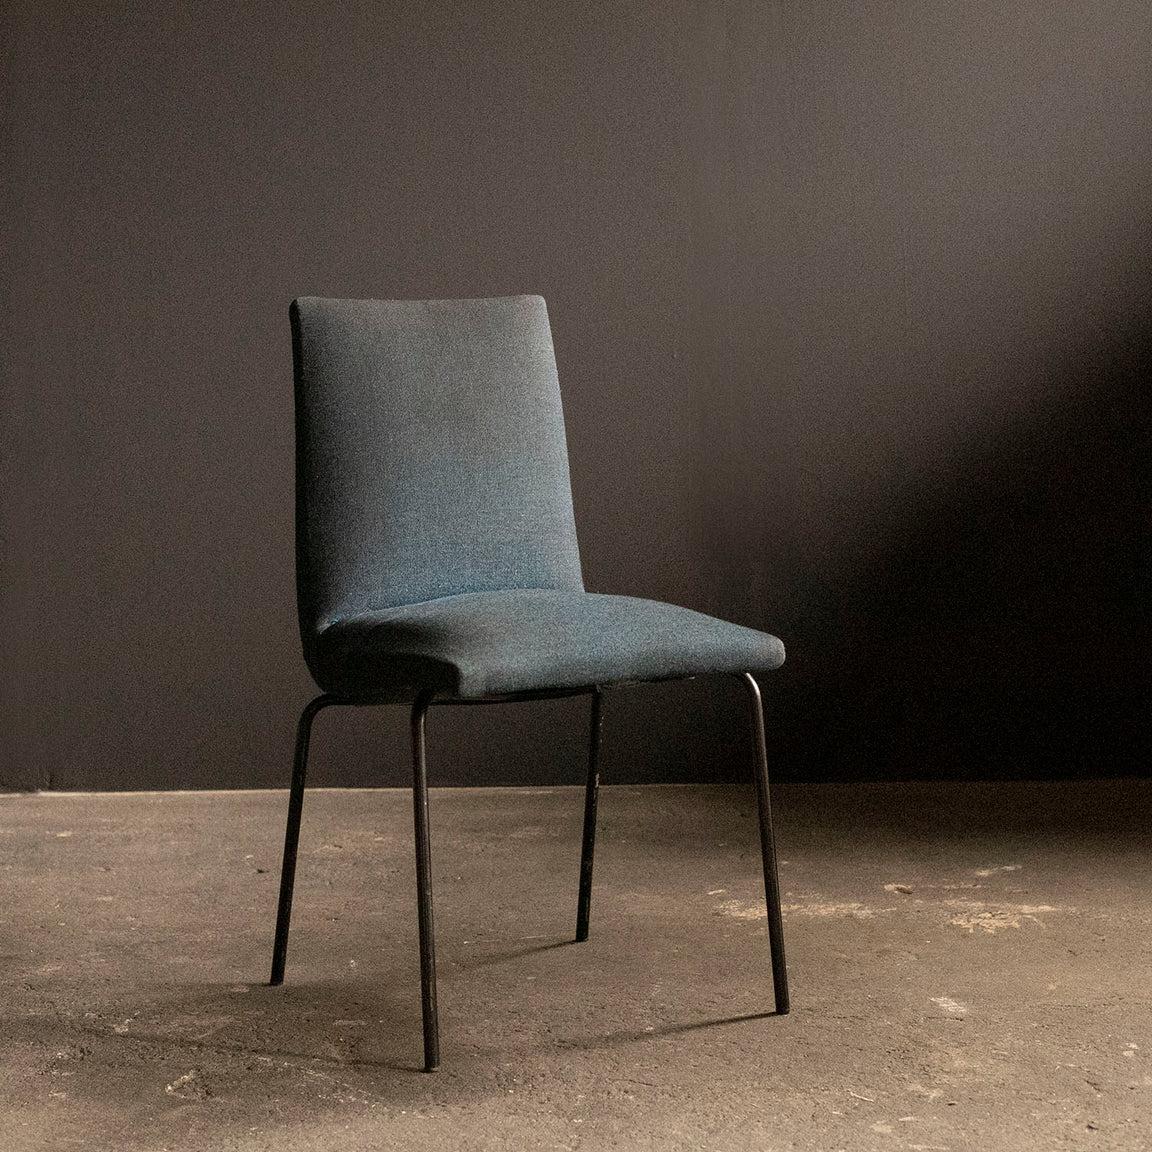 Esszimmerstühle aus der Mitte des Jahrhunderts, entworfen vom französischen Designer Pierre Guariche für den belgischen Möbelhersteller Meurop in den 1960er Jahren.
Polsterung und schwarz lackierte Metallbeine.
Die Polsterung ist